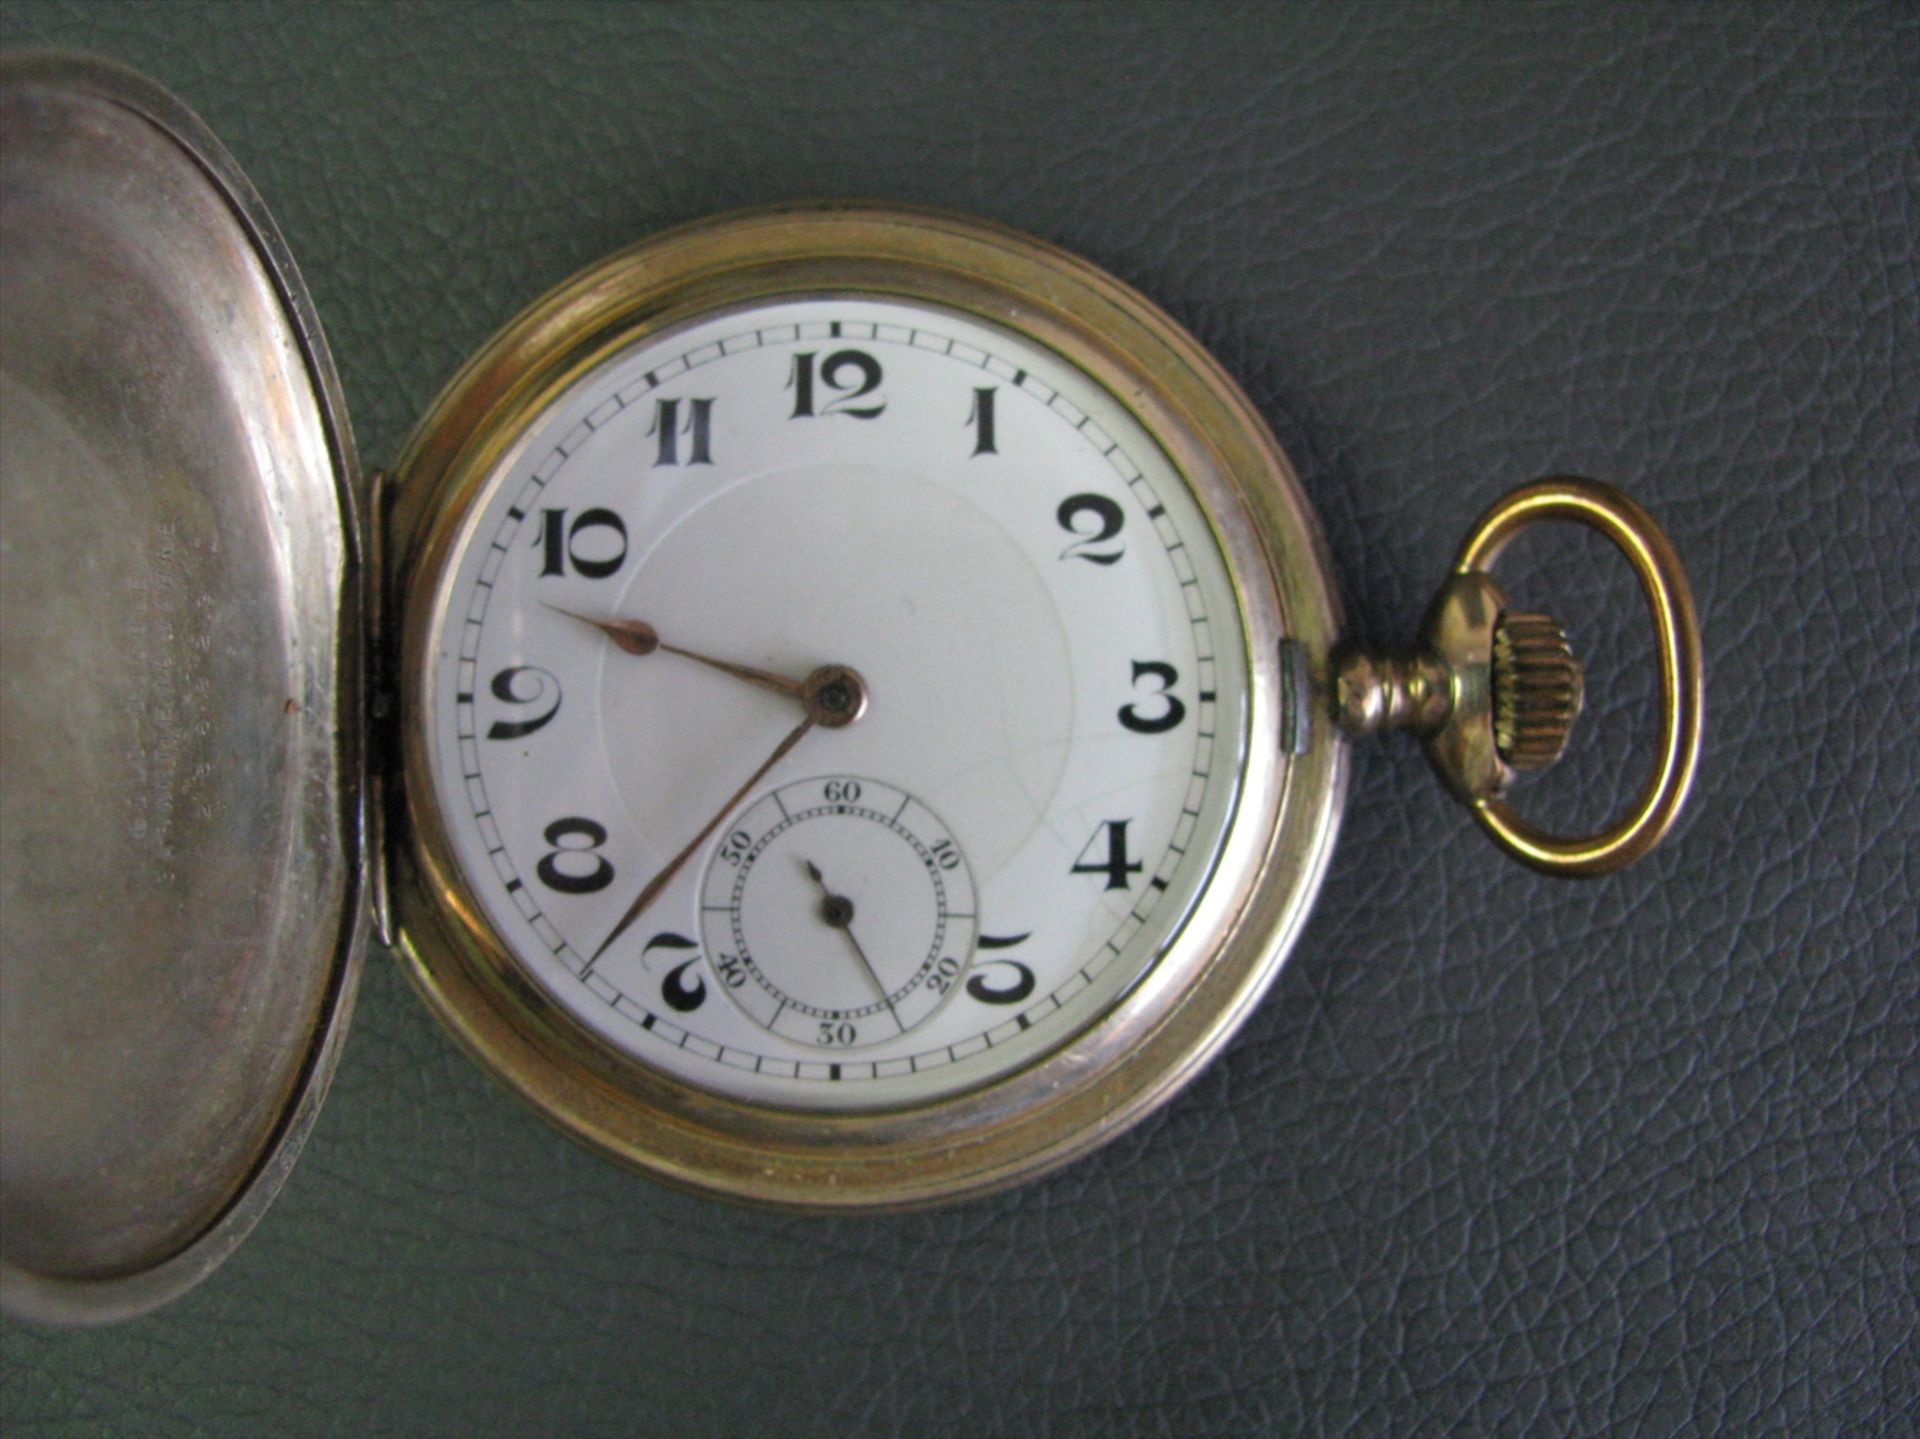 Sprungdeckeltaschenuhr, um 1900, vergoldetes Gehäuse, Kronenaufzug, intakt, d 5,3 cm.- - -19.00 %